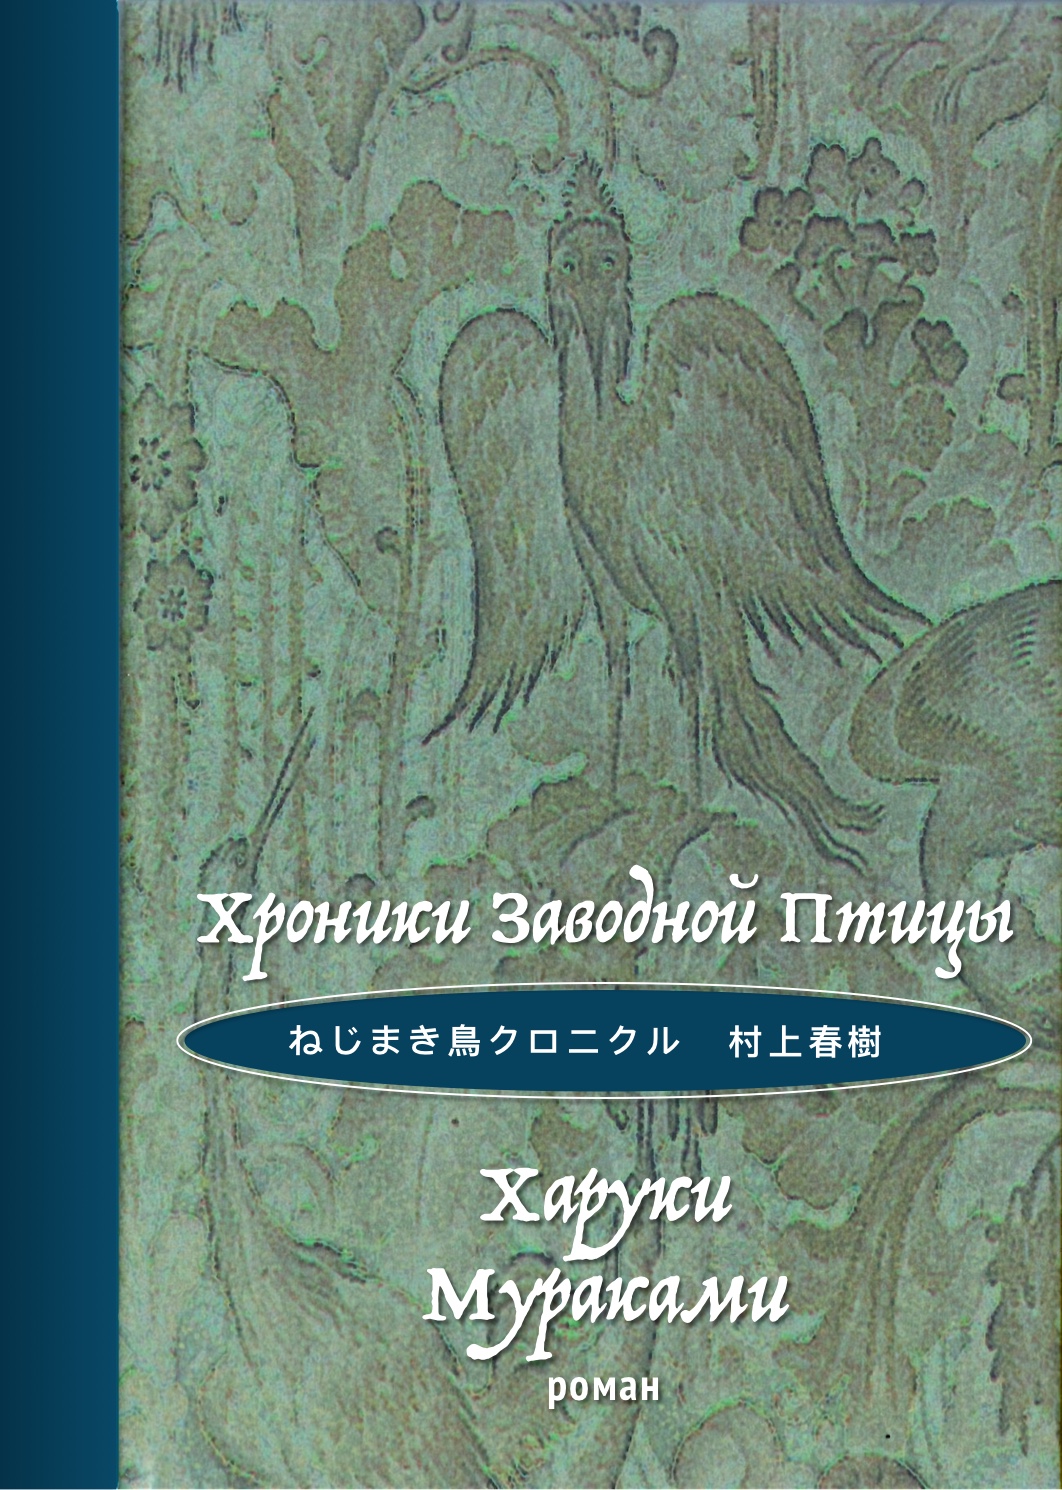 村上 春樹 ねじまき鳥クロニクル ー Haruki Murakami The Wind-Up Bird Chronicle Cover — Харуки Мураками Охота на овец обложка